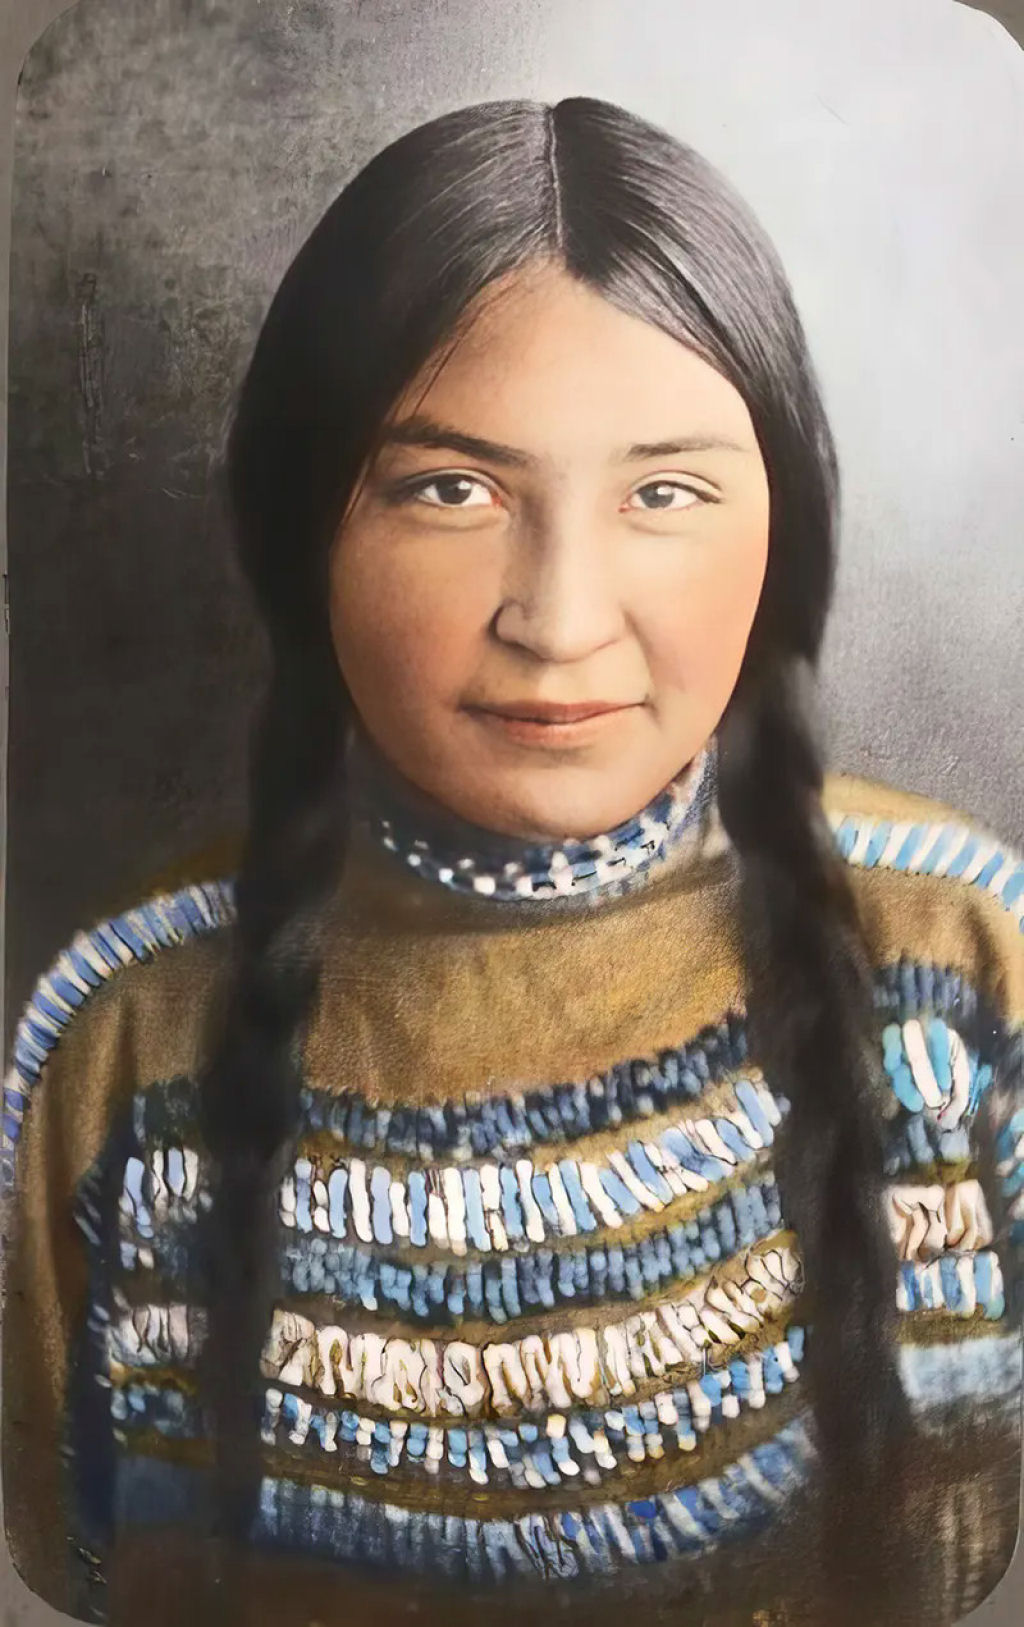 Impressionantes fotos históricas coloridas de nativos americanos do final do século 19 e início do século 20 02